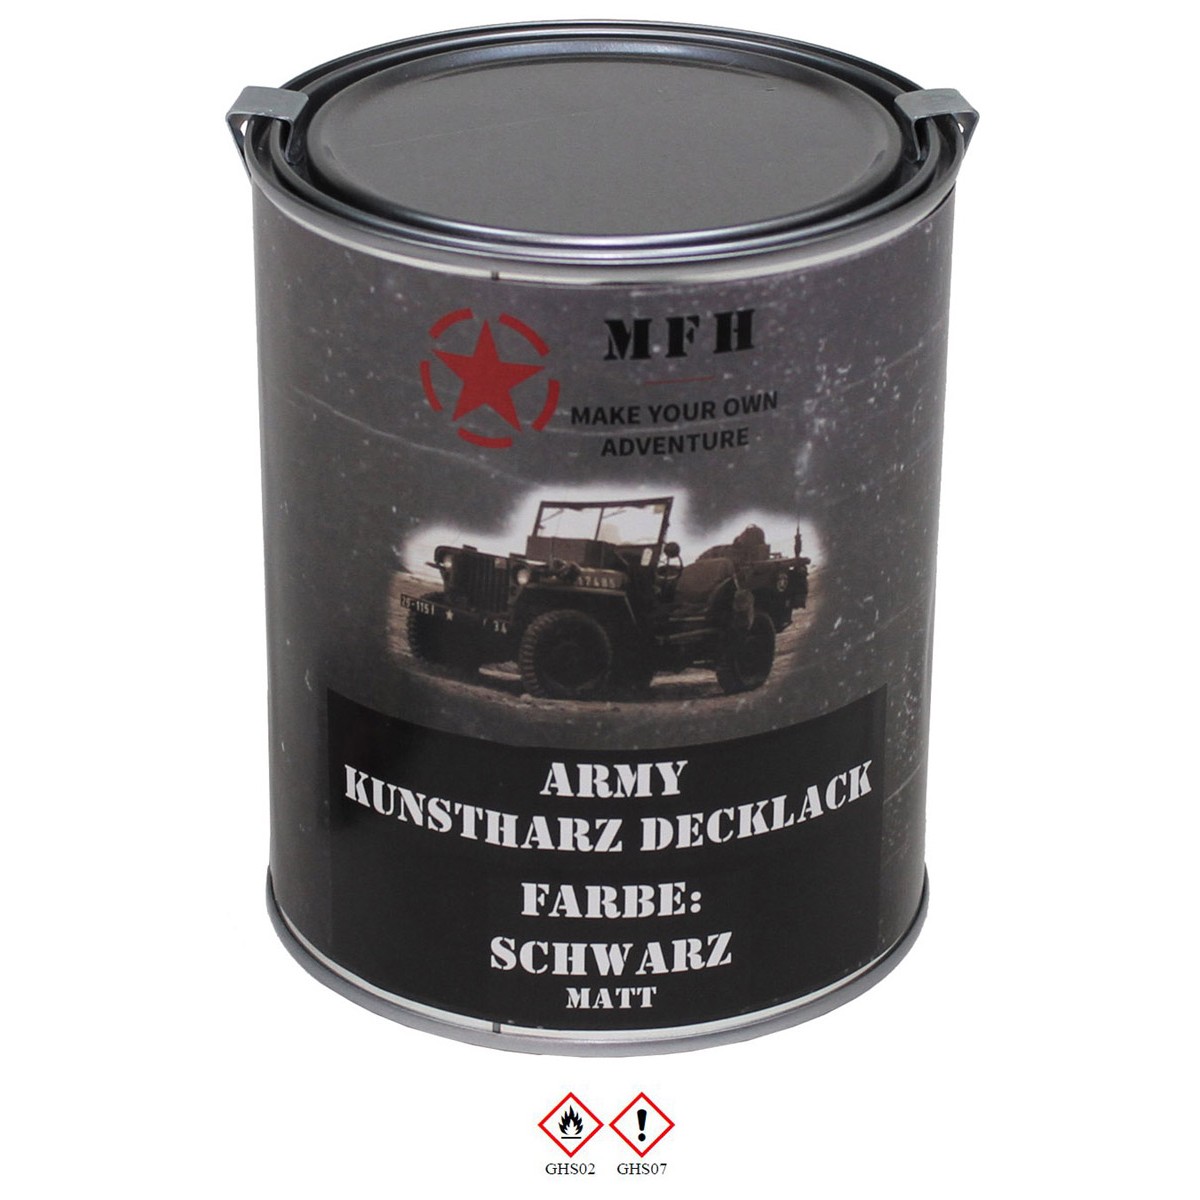 Farbdose "Army" SCHWARZ matt Kunstharz Decklack 1 Liter/16,50 €